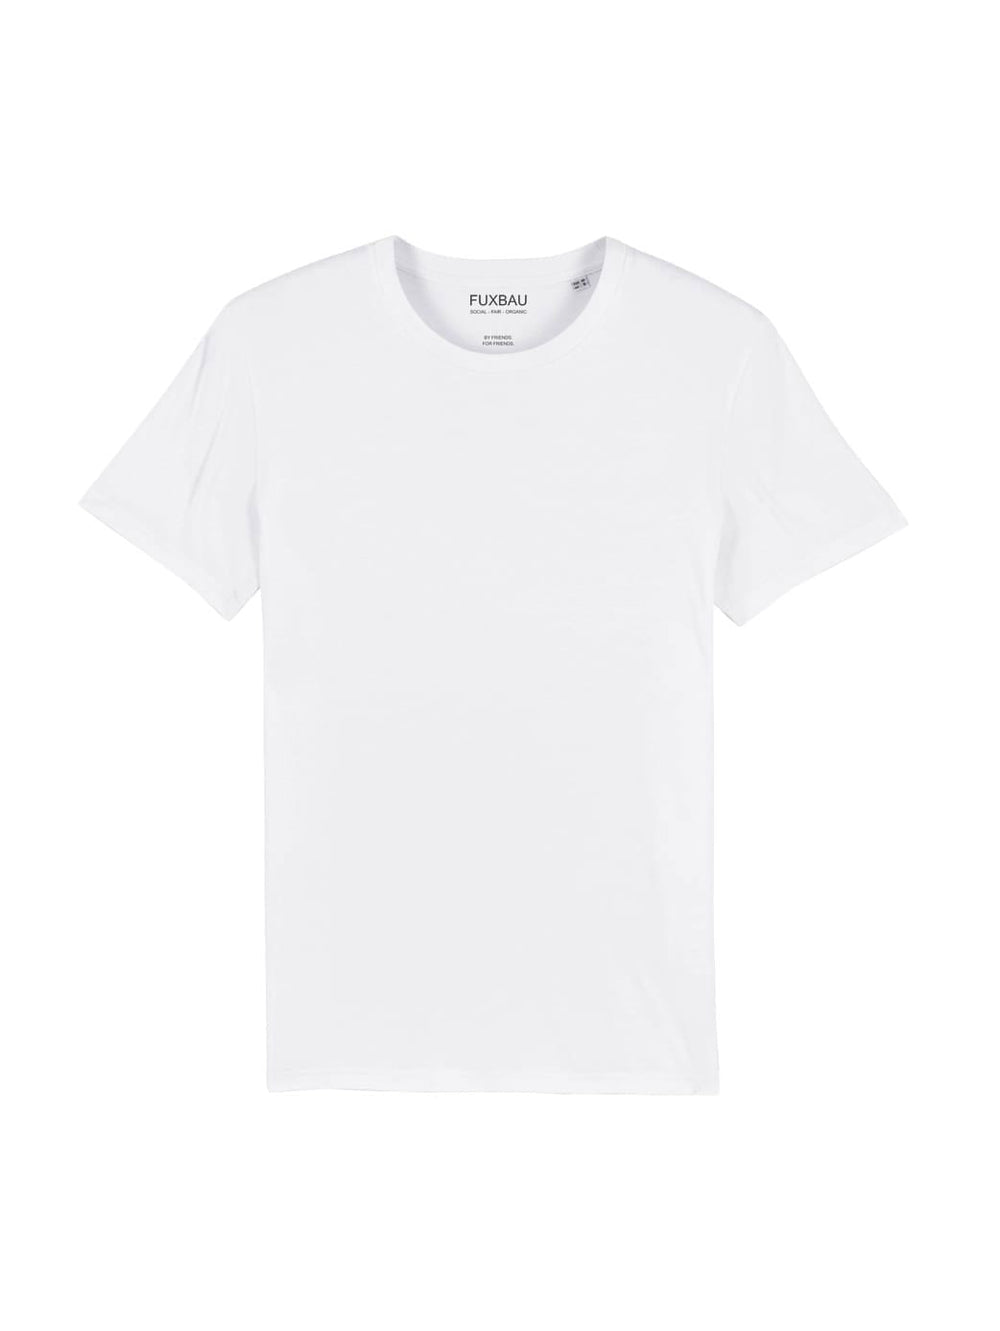 Nachhaltiges Fair Fashion Unisex Standard Basic T-Shirt in weiß von FUXBAU aus 100% GOTS zertifizierter Biobaumwolle im 3er Pack.